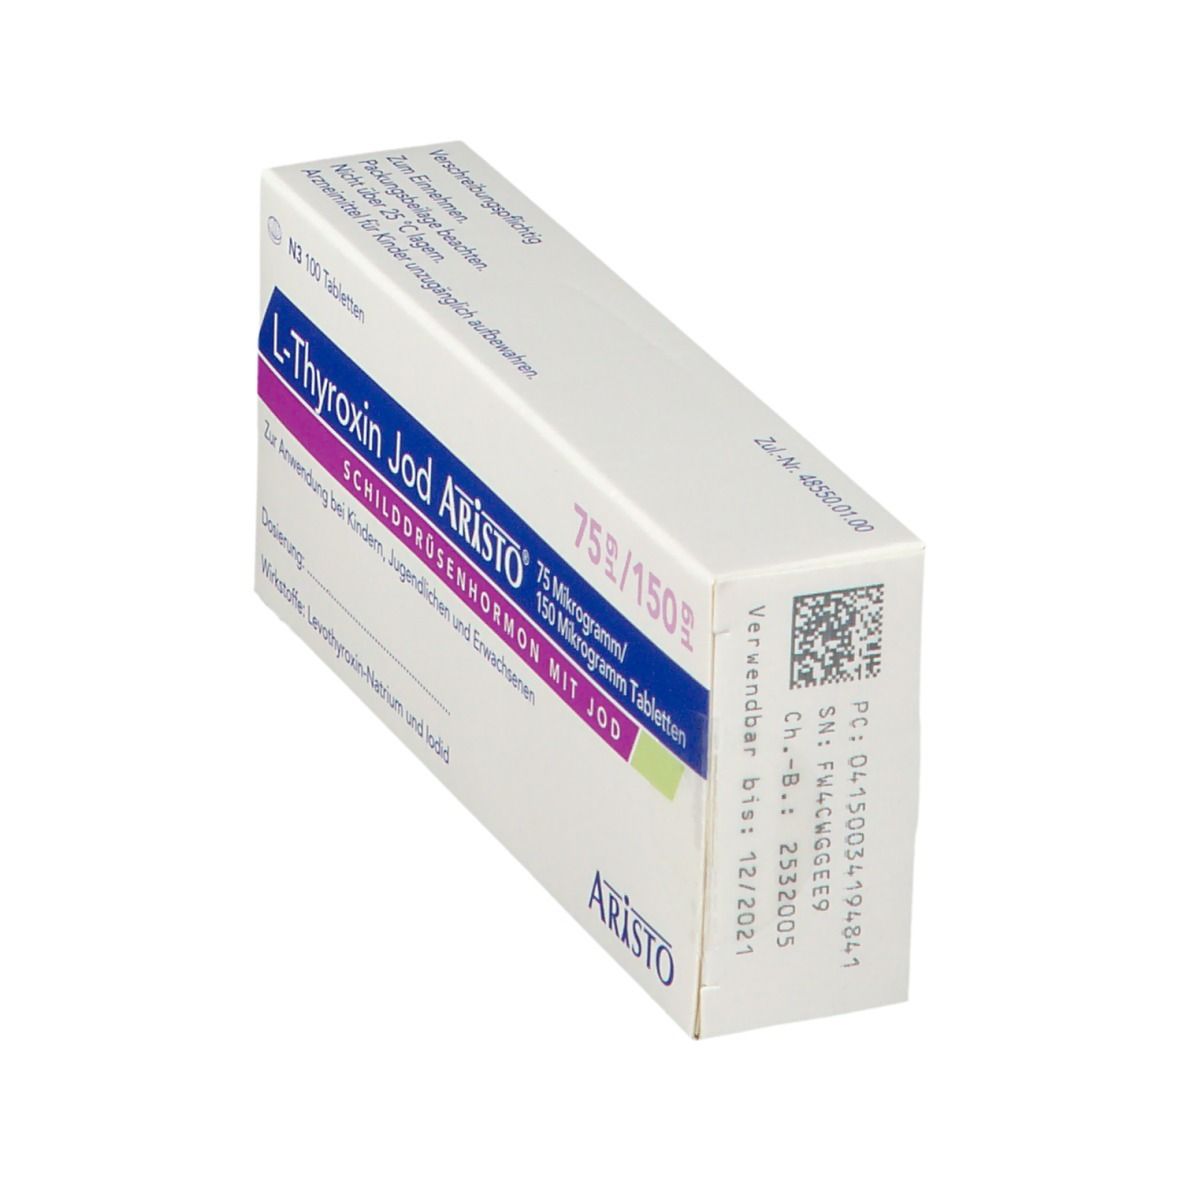 L-Thyroxin Jod Aristo® 75 µg/150 µg